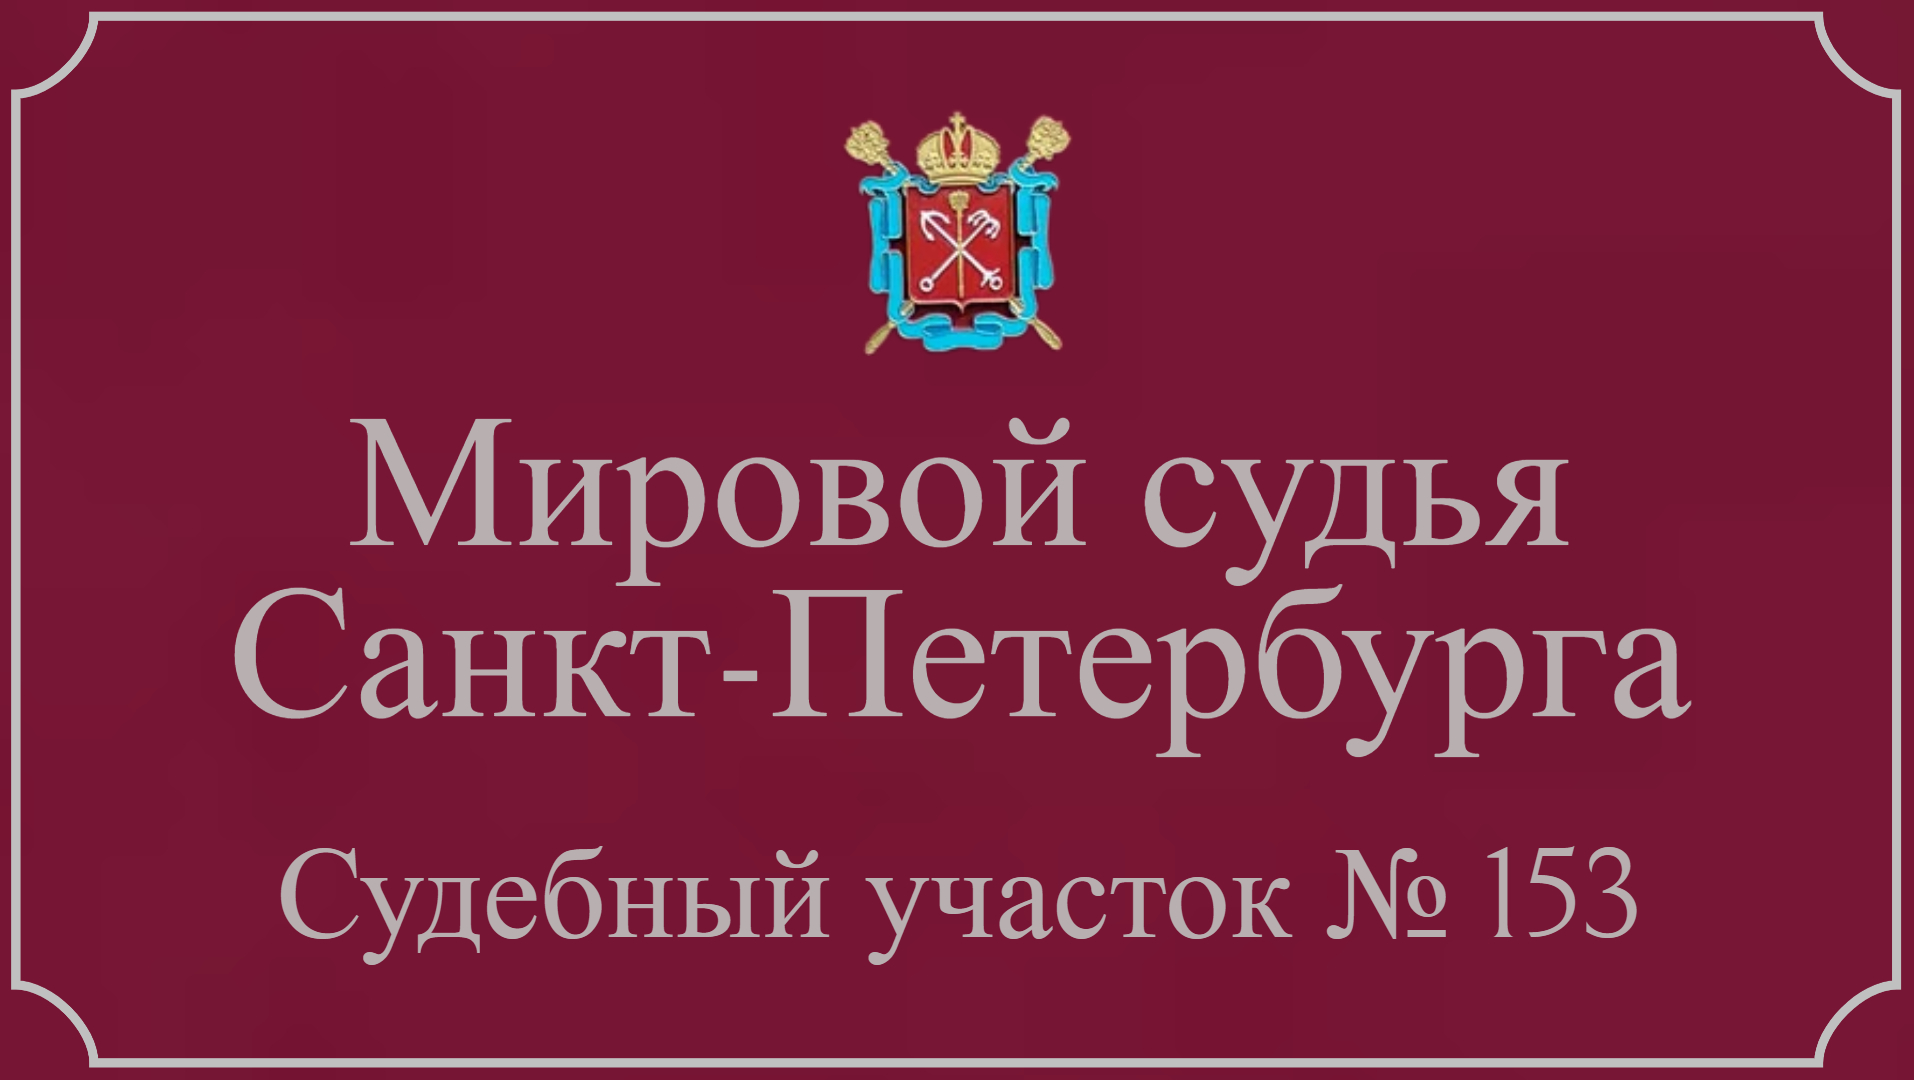 Информация по 153 судебному участку в Санкт-Петербурге.